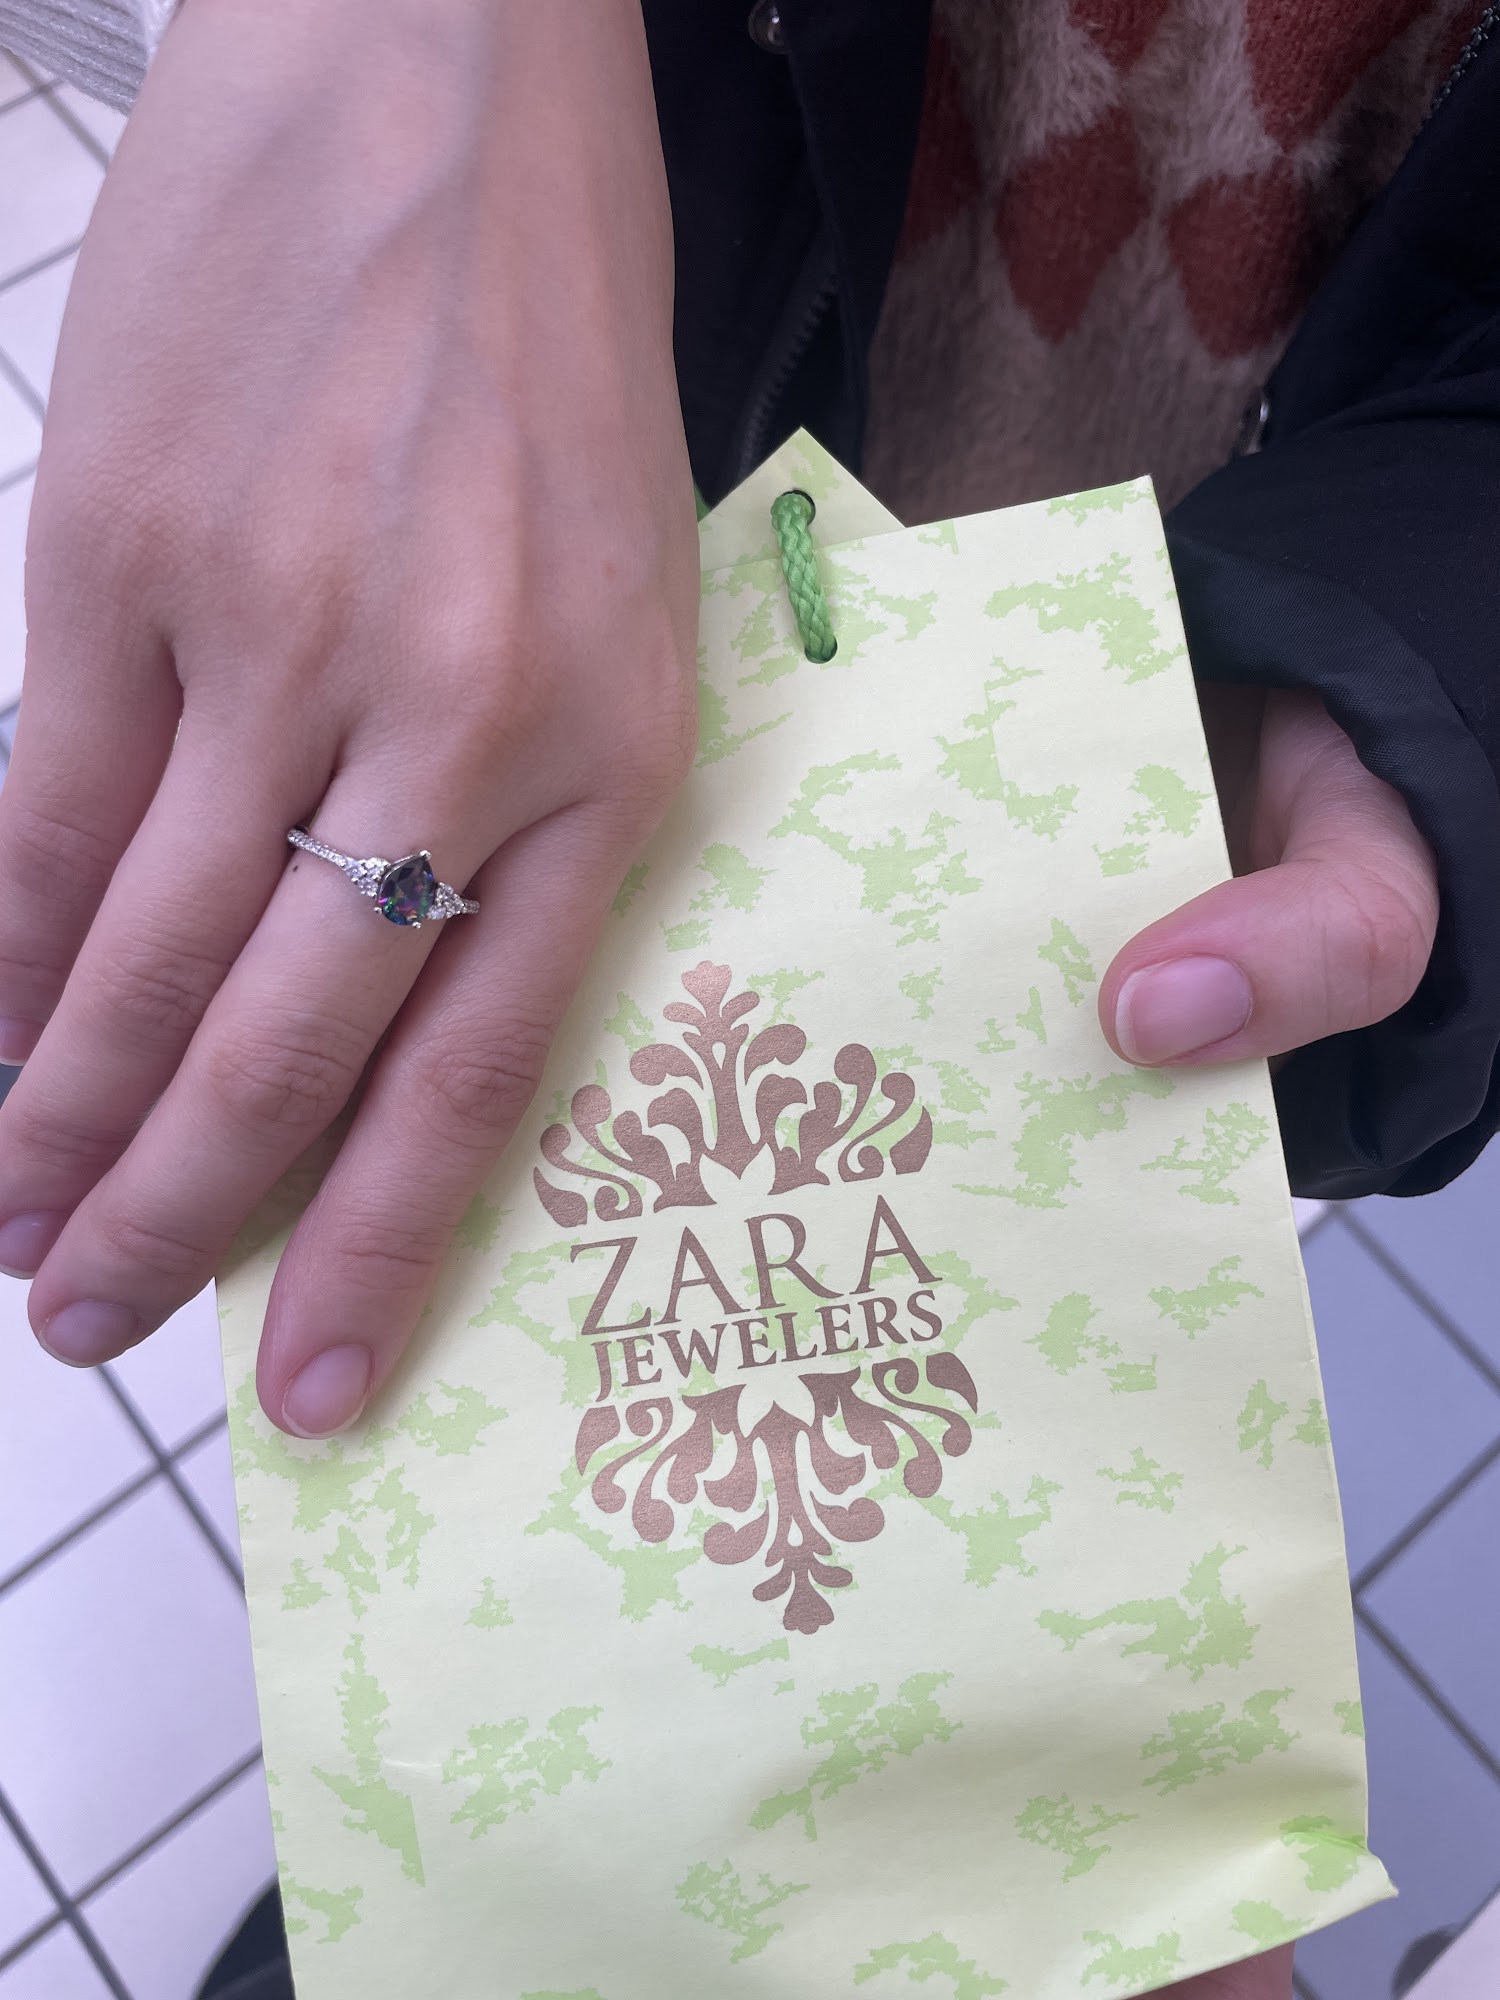 Zara Jewelers